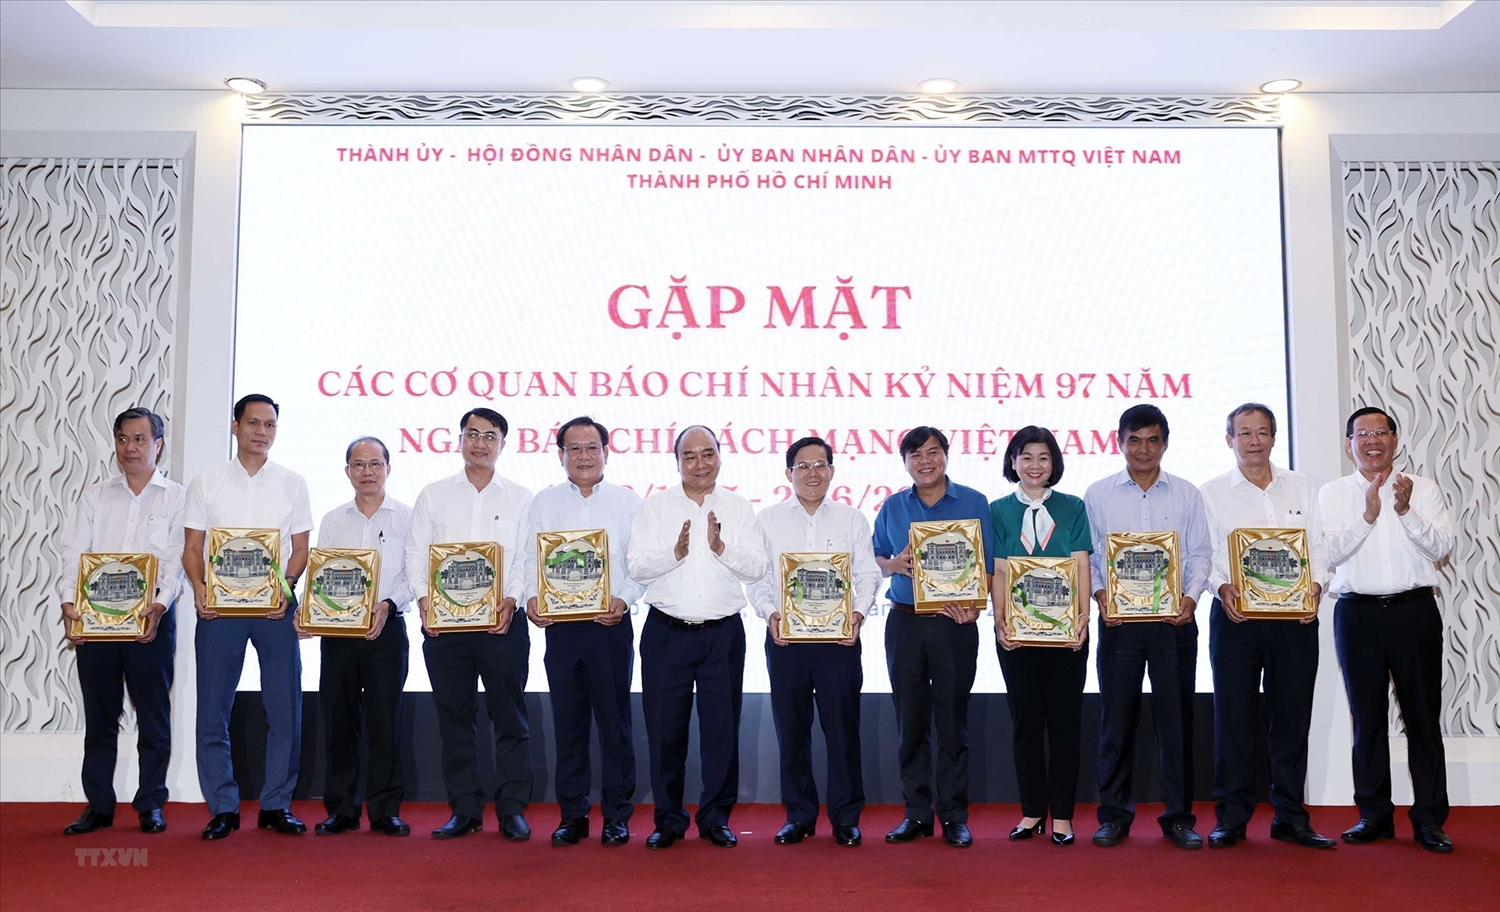 Chủ tịch nước Nguyễn Xuân Phúc tặng quà lưu niệm cho các Tổng Biên tập, Trưởng các cơ quan báo chí, nhà báo tiêu biểu trên địa bàn Thành phố Hồ Chí Minh. (Ảnh: TTXVN)